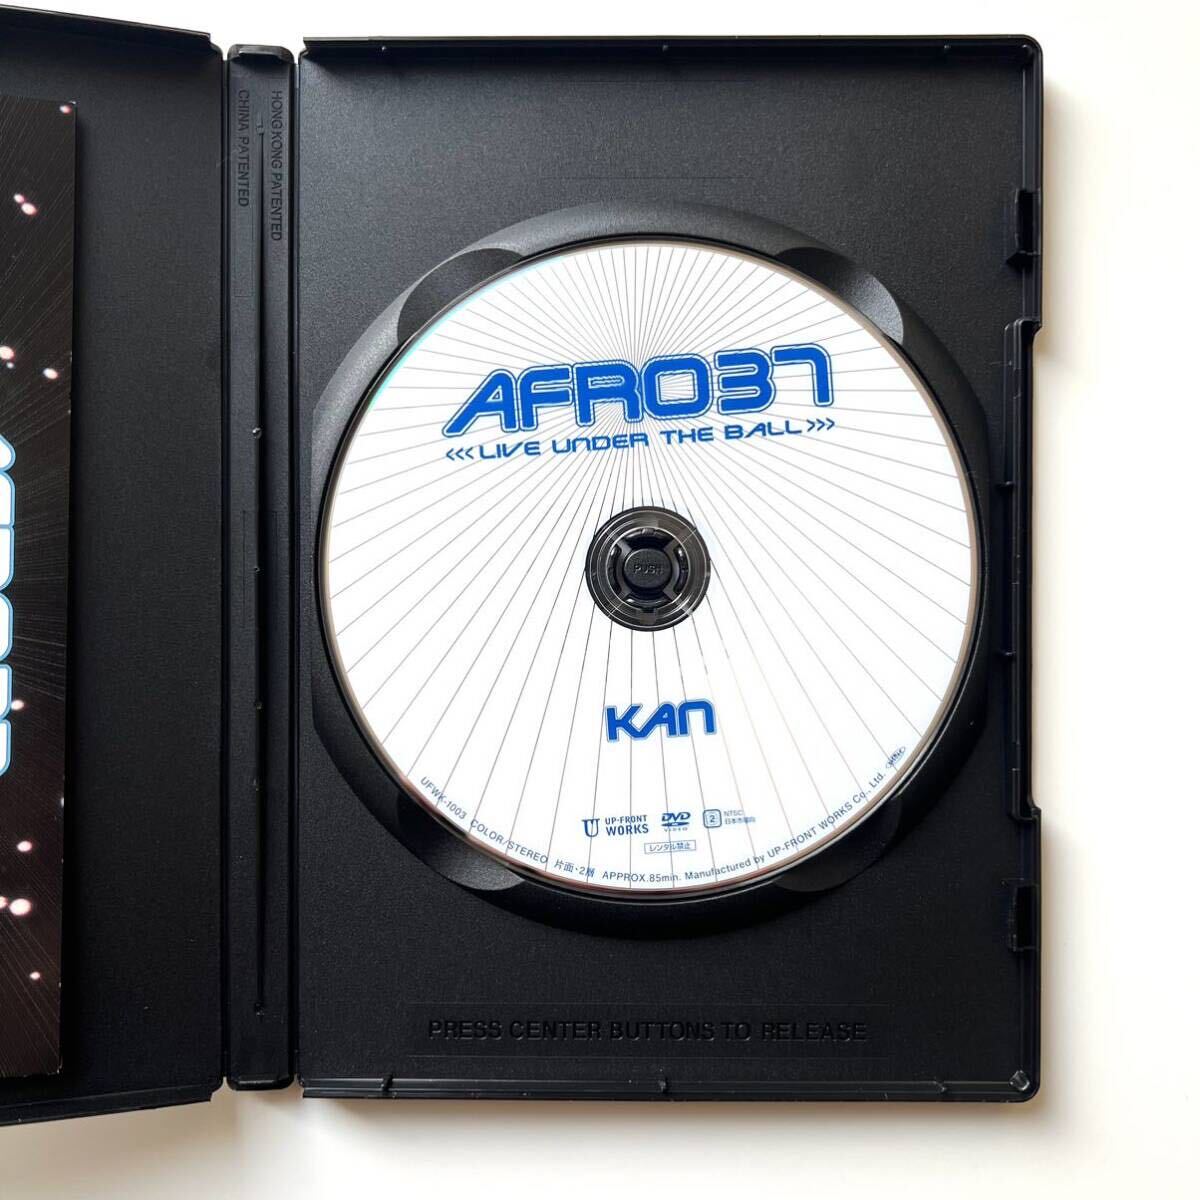 【ほぼ新品】KAN LIVE DVD『AFRO 37 -Live Under The Ball-』_画像3